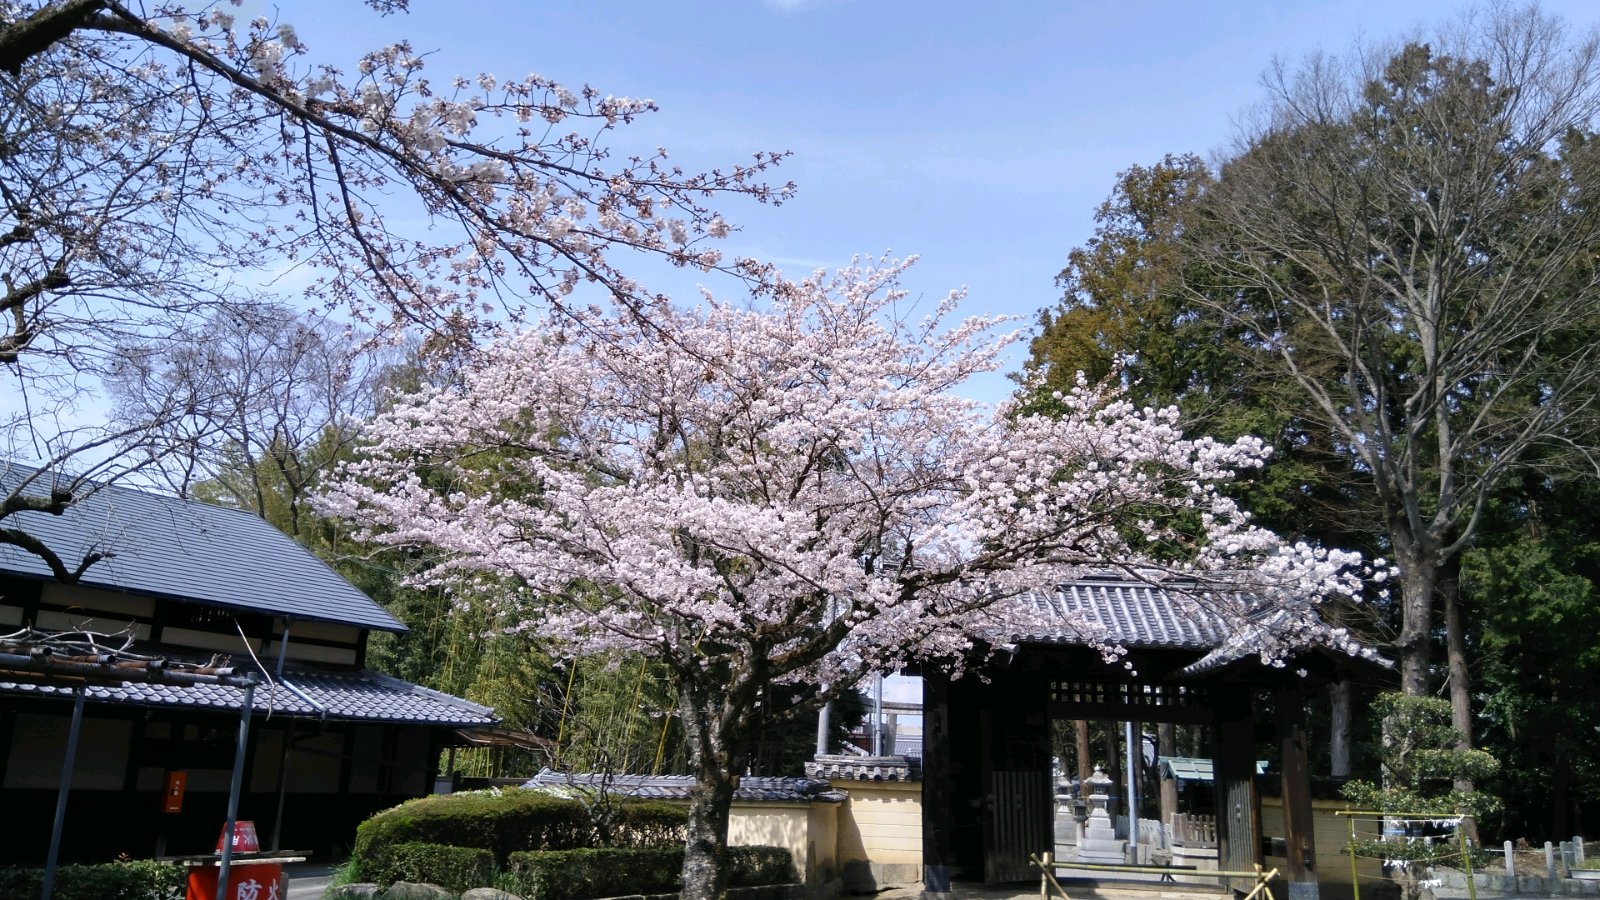 鞭崎神社表門は国指定重要文化財に指定されています。